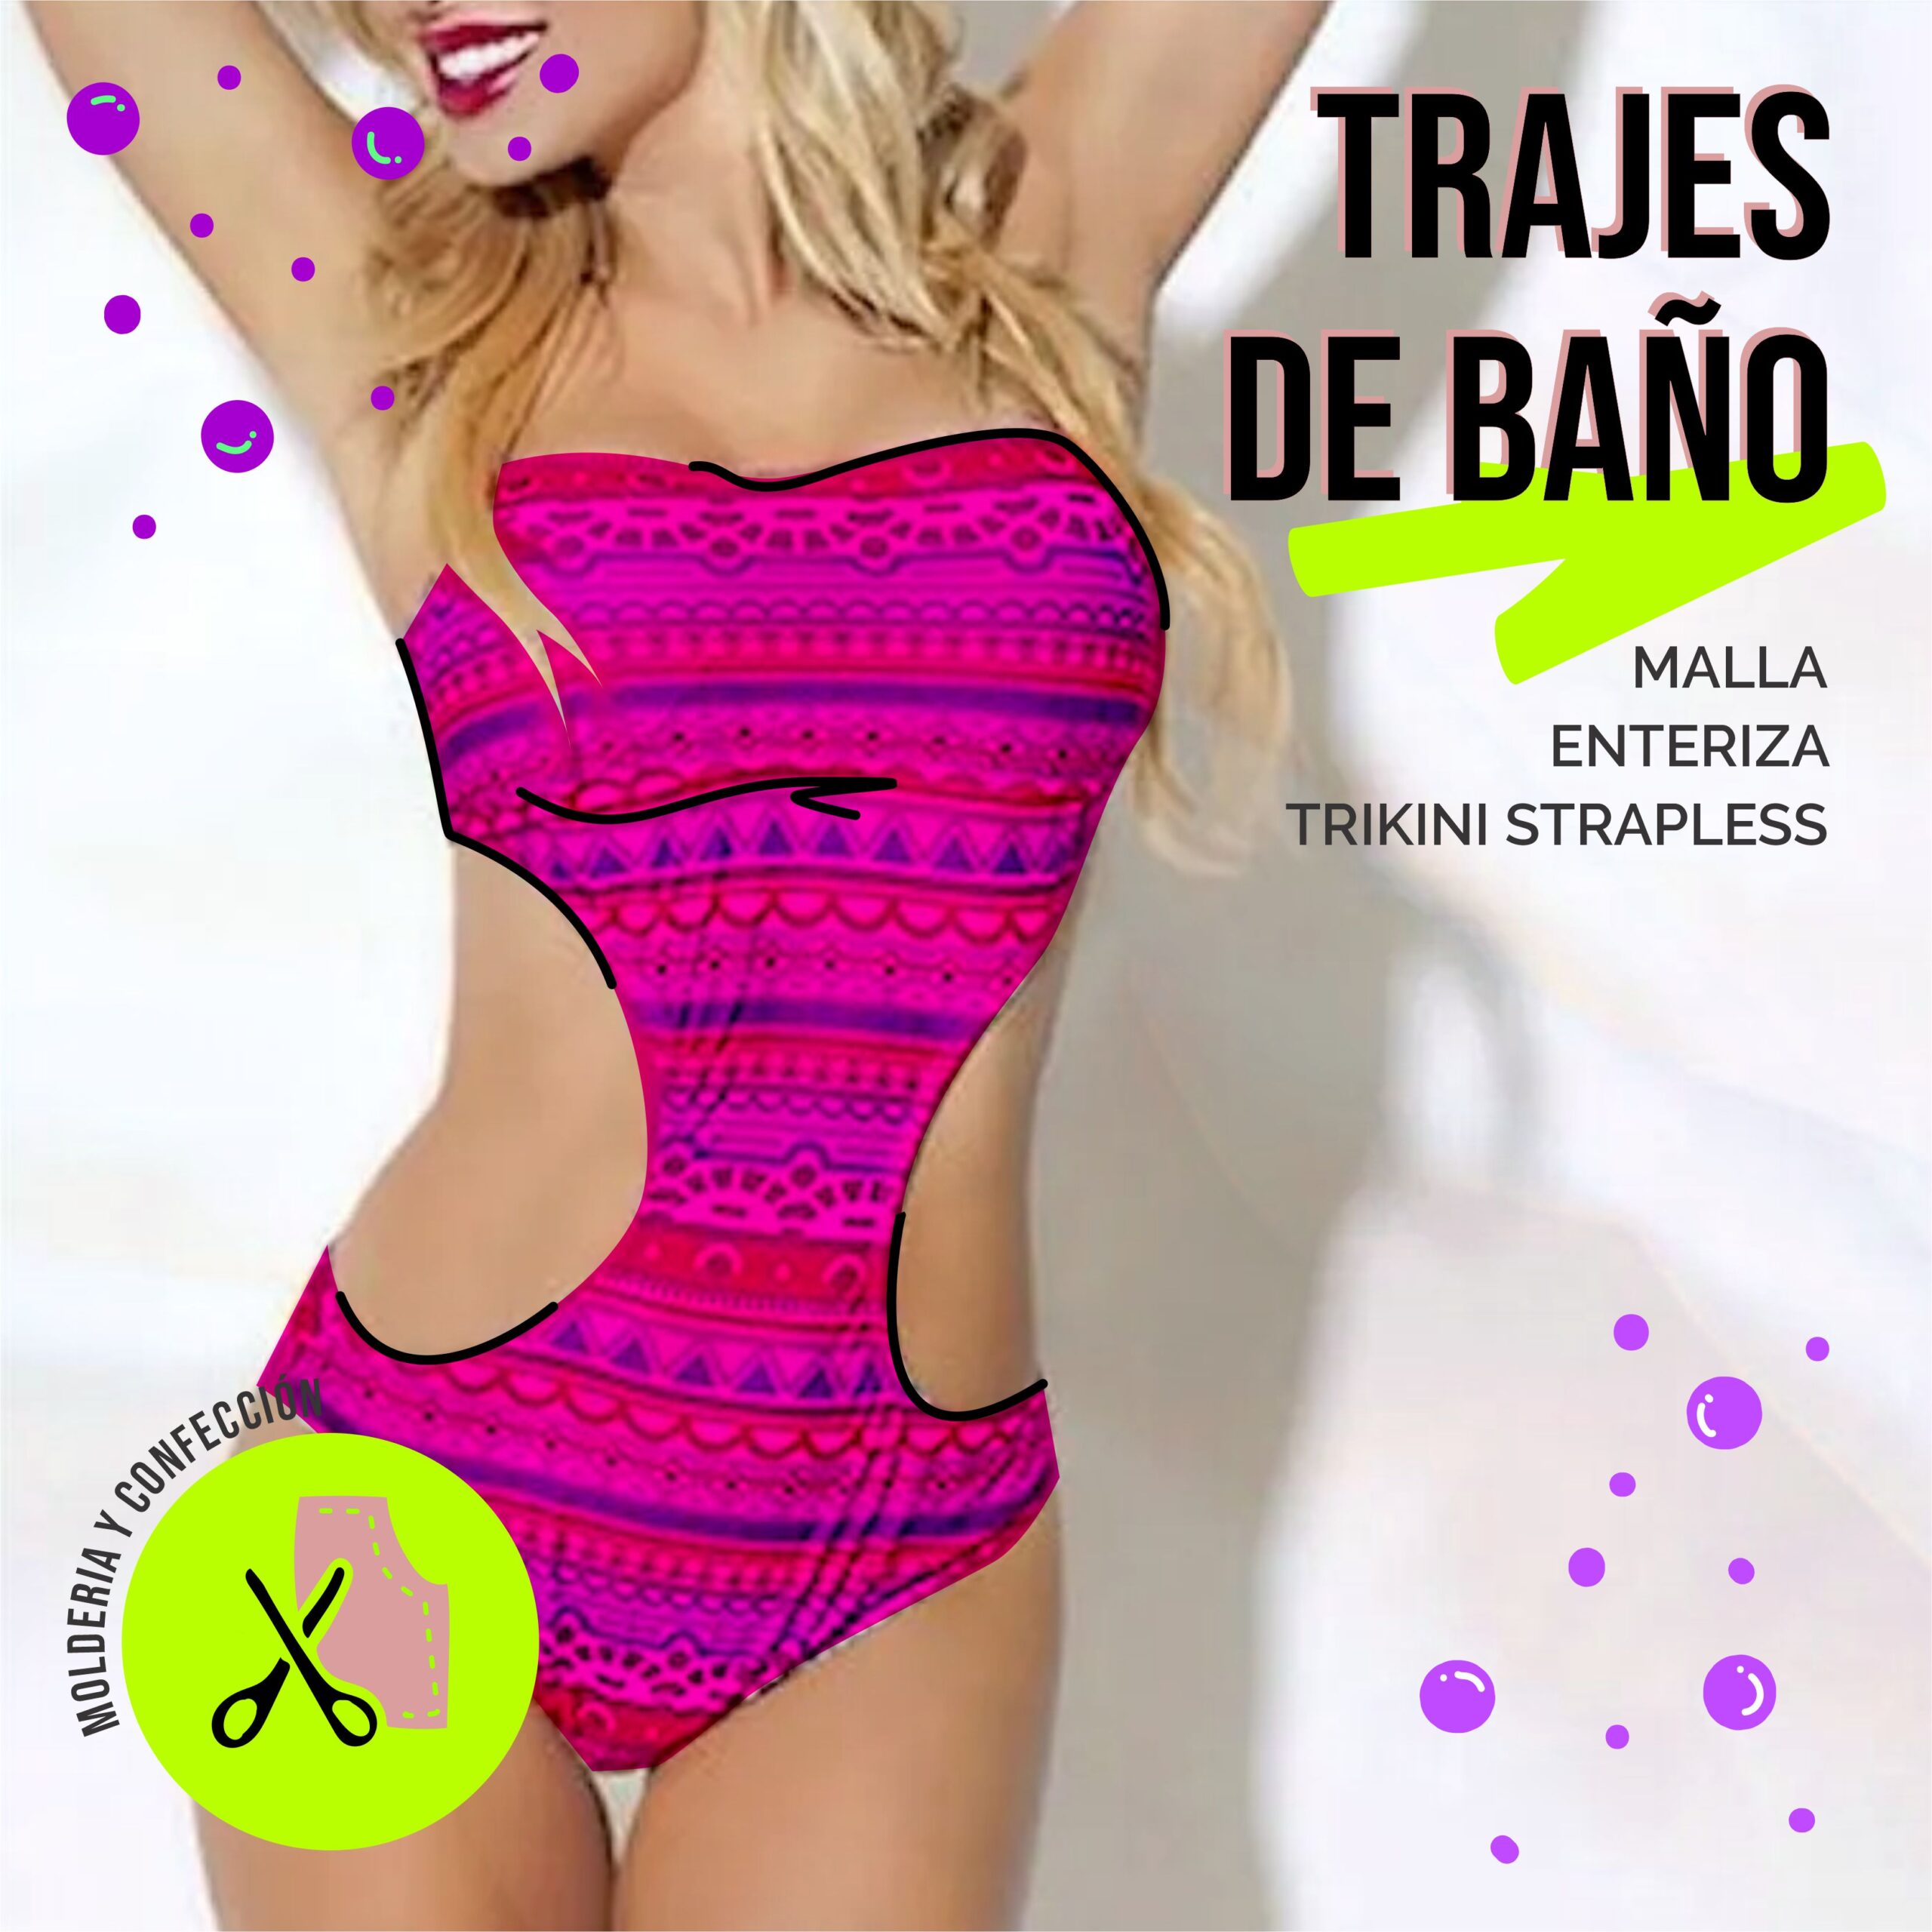 DE BAÑO - Malla Enteriza Trikini y Strapless - DaleModa!